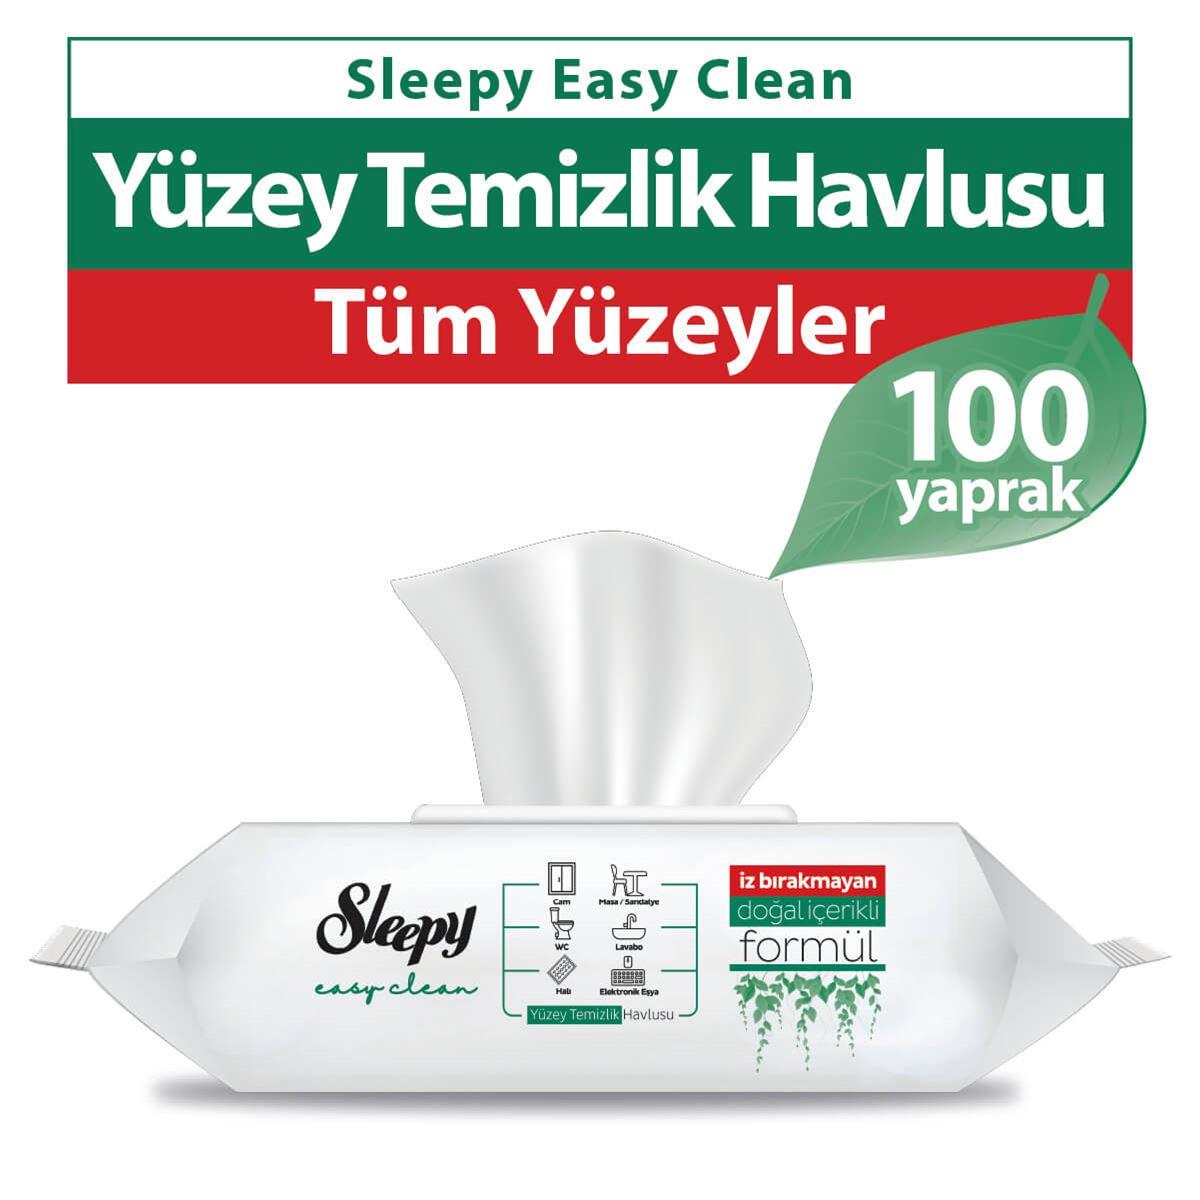 Sleepy Easy Clean Yüzey Temizlik Havlusu 100 Yaprak 8 Paket